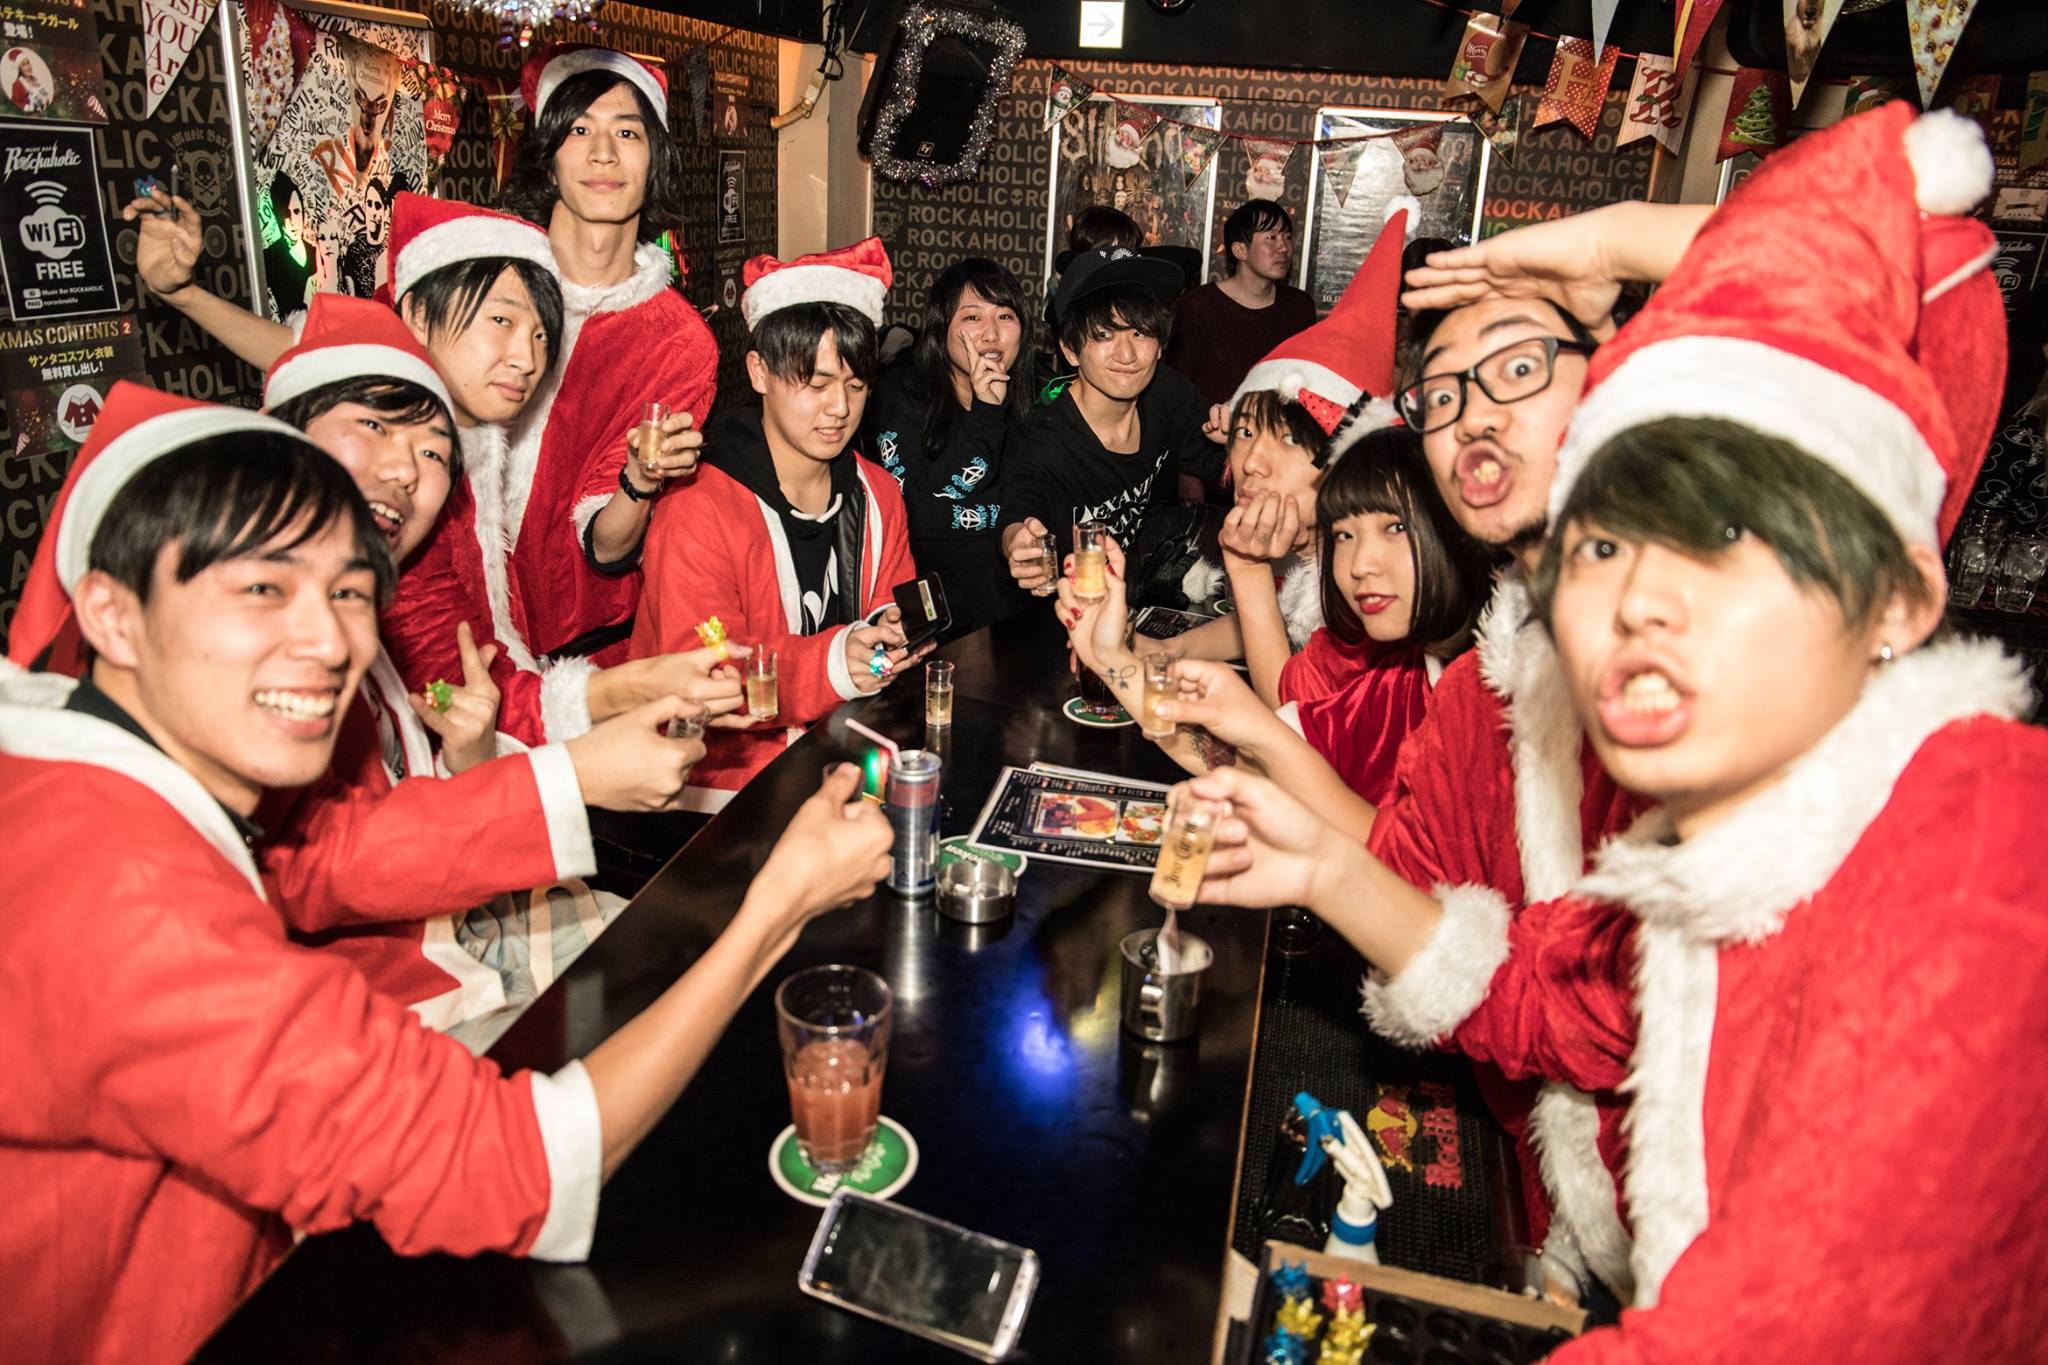 https://bar-rockaholic.jp/shibuya/blog/78DAACC7-D3CC-4F03-AE99-9A2F887C0AD5.jpeg